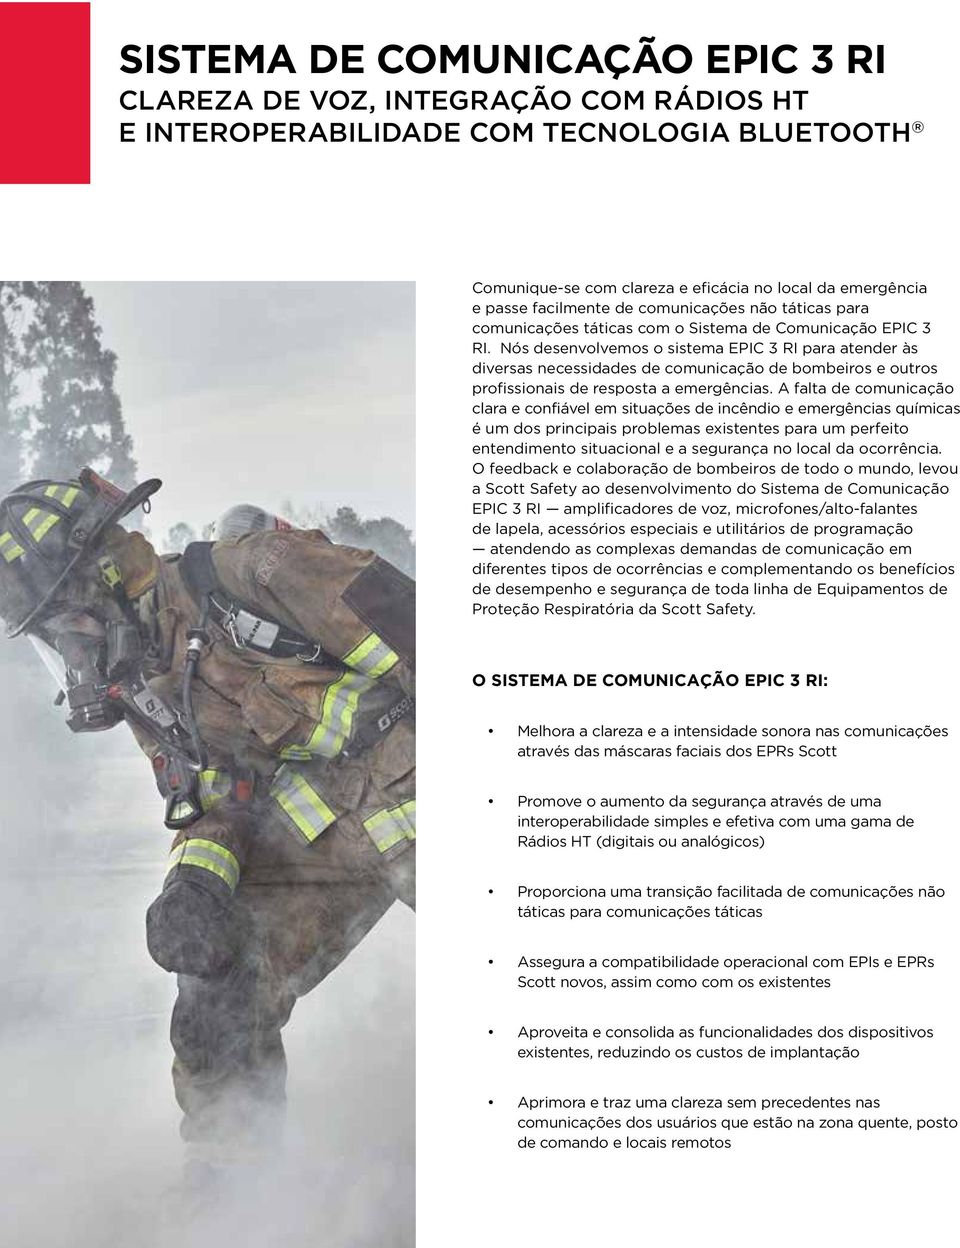 Nós desenvolvemos o sistema EPIC 3 RI para atender às diversas necessidades de comunicação de bombeiros e outros profissionais de resposta a emergências.